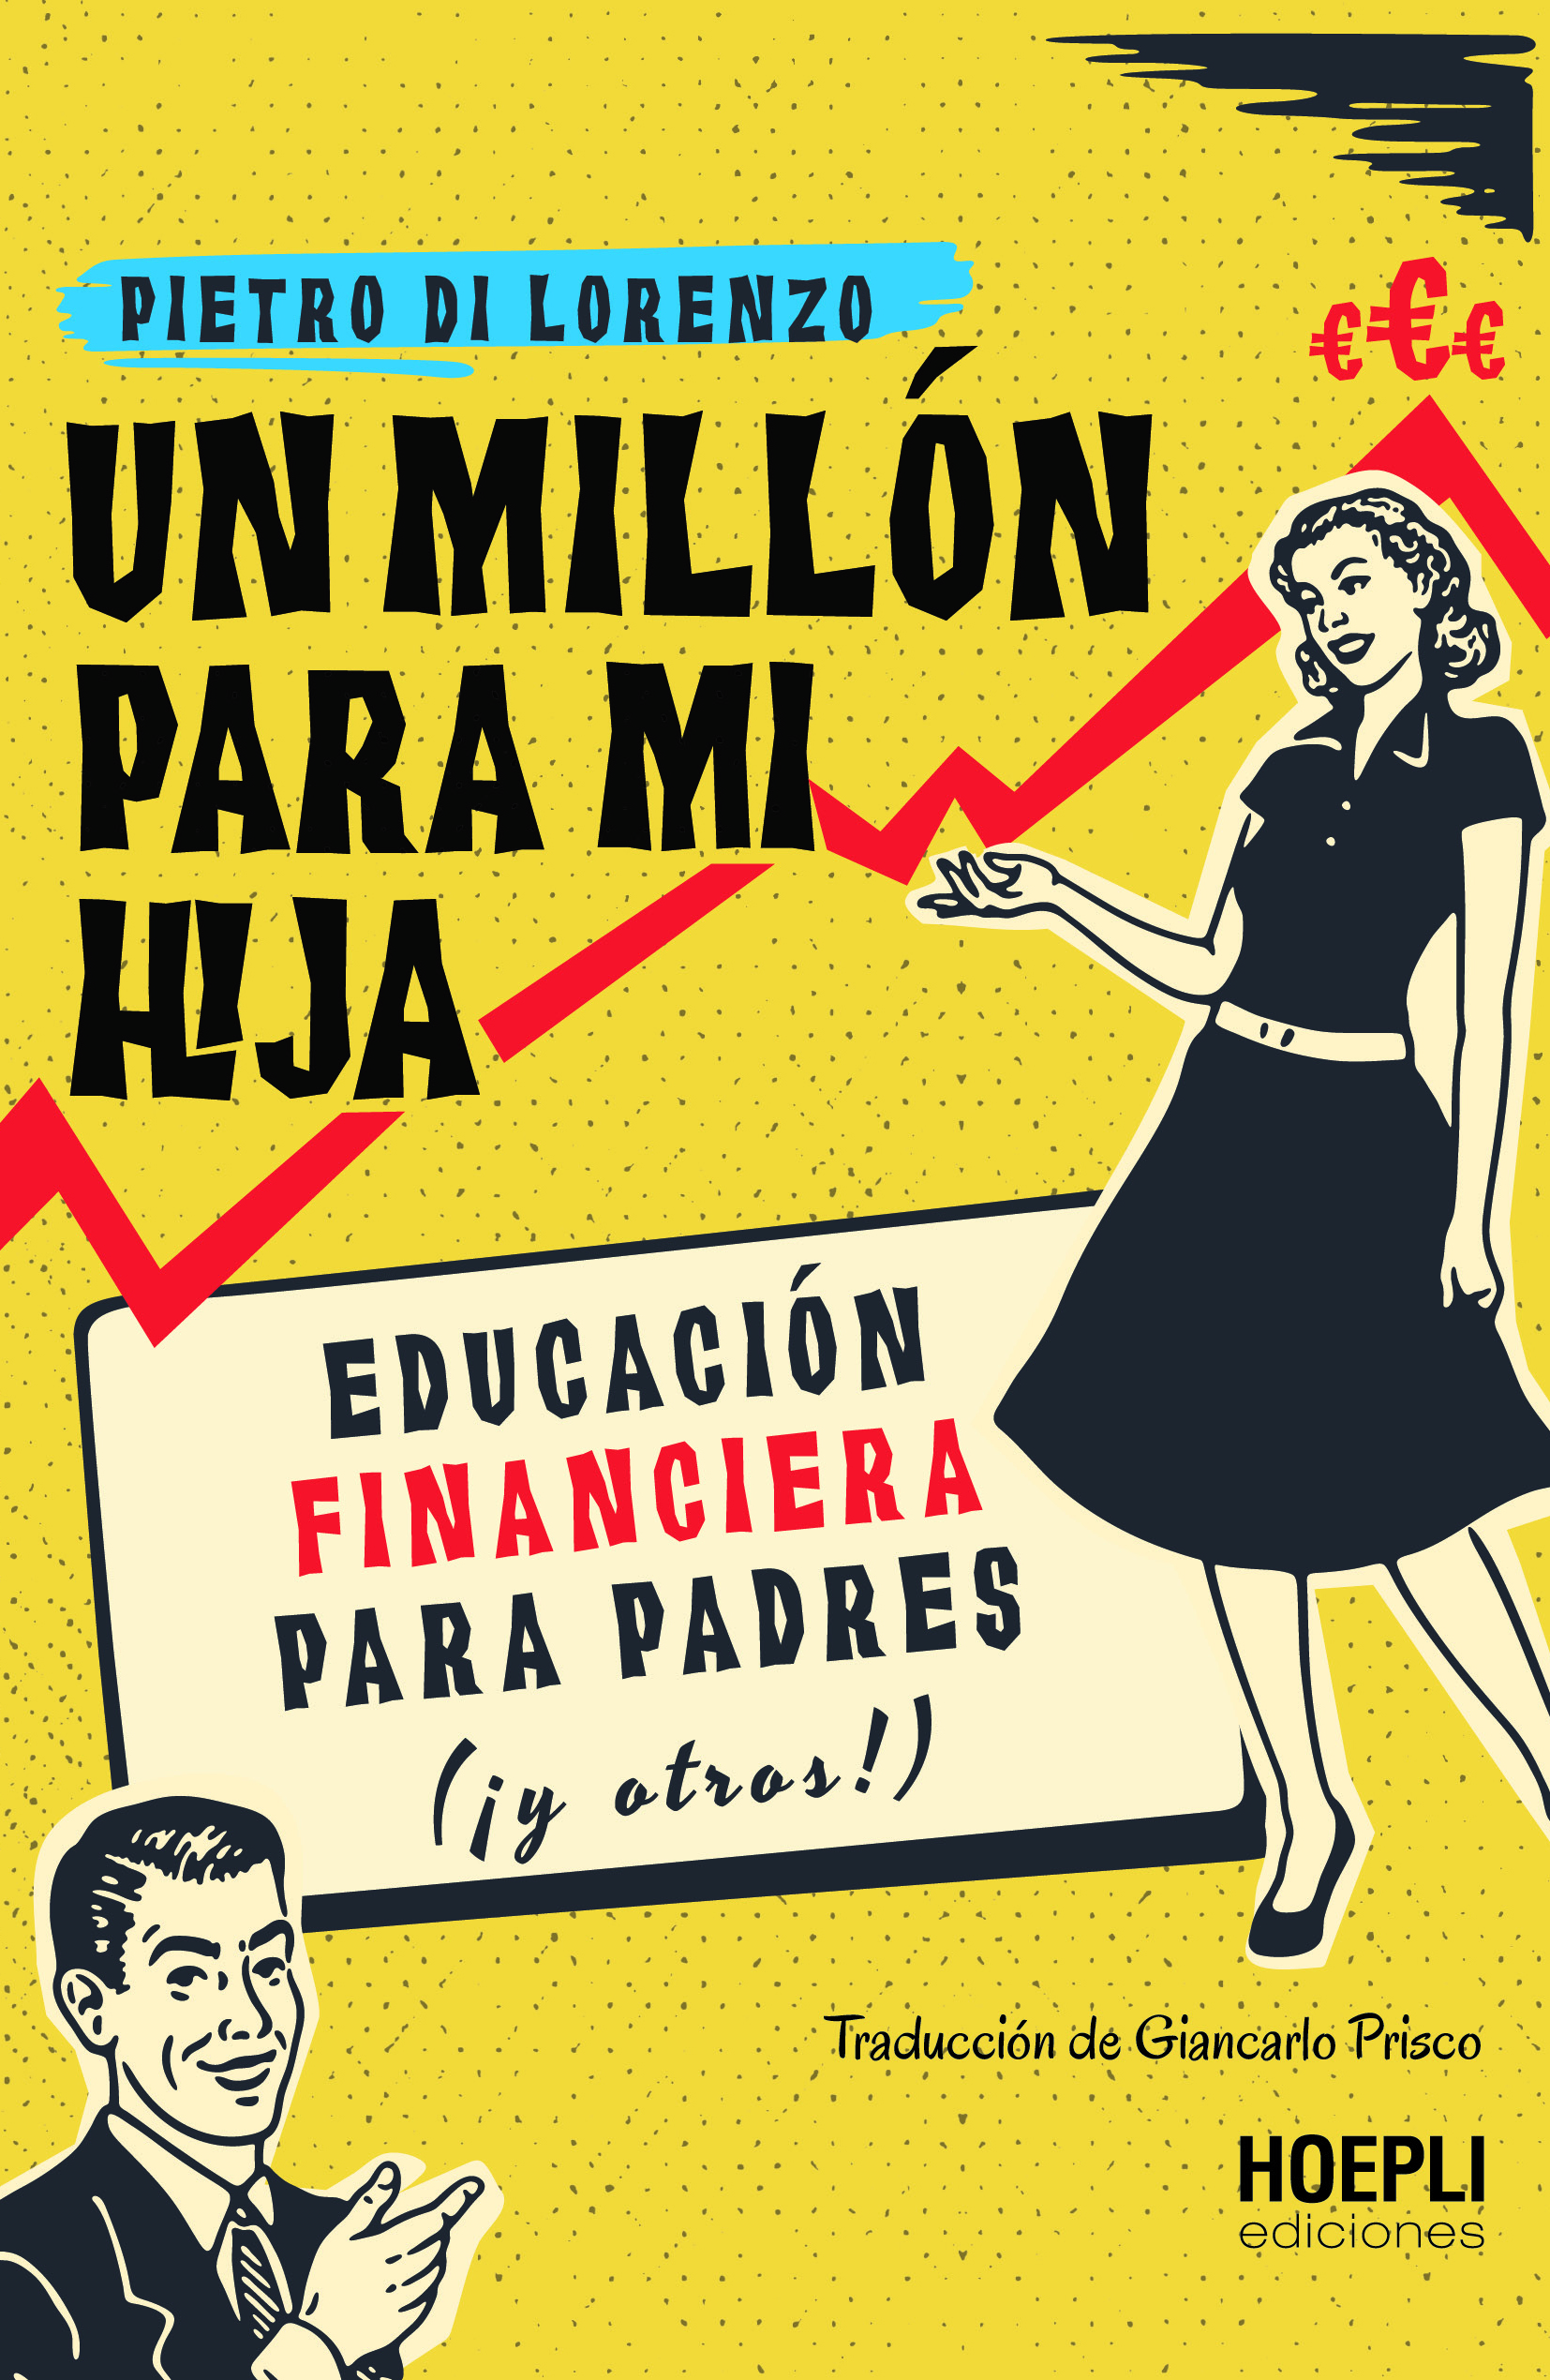 Un millon para mi hija Sono davvero orgoglioso di poter anticipare l'imminente uscita della versione spagnola del mio ultimo libro UN MILIONE PER MIA FIGLIA.